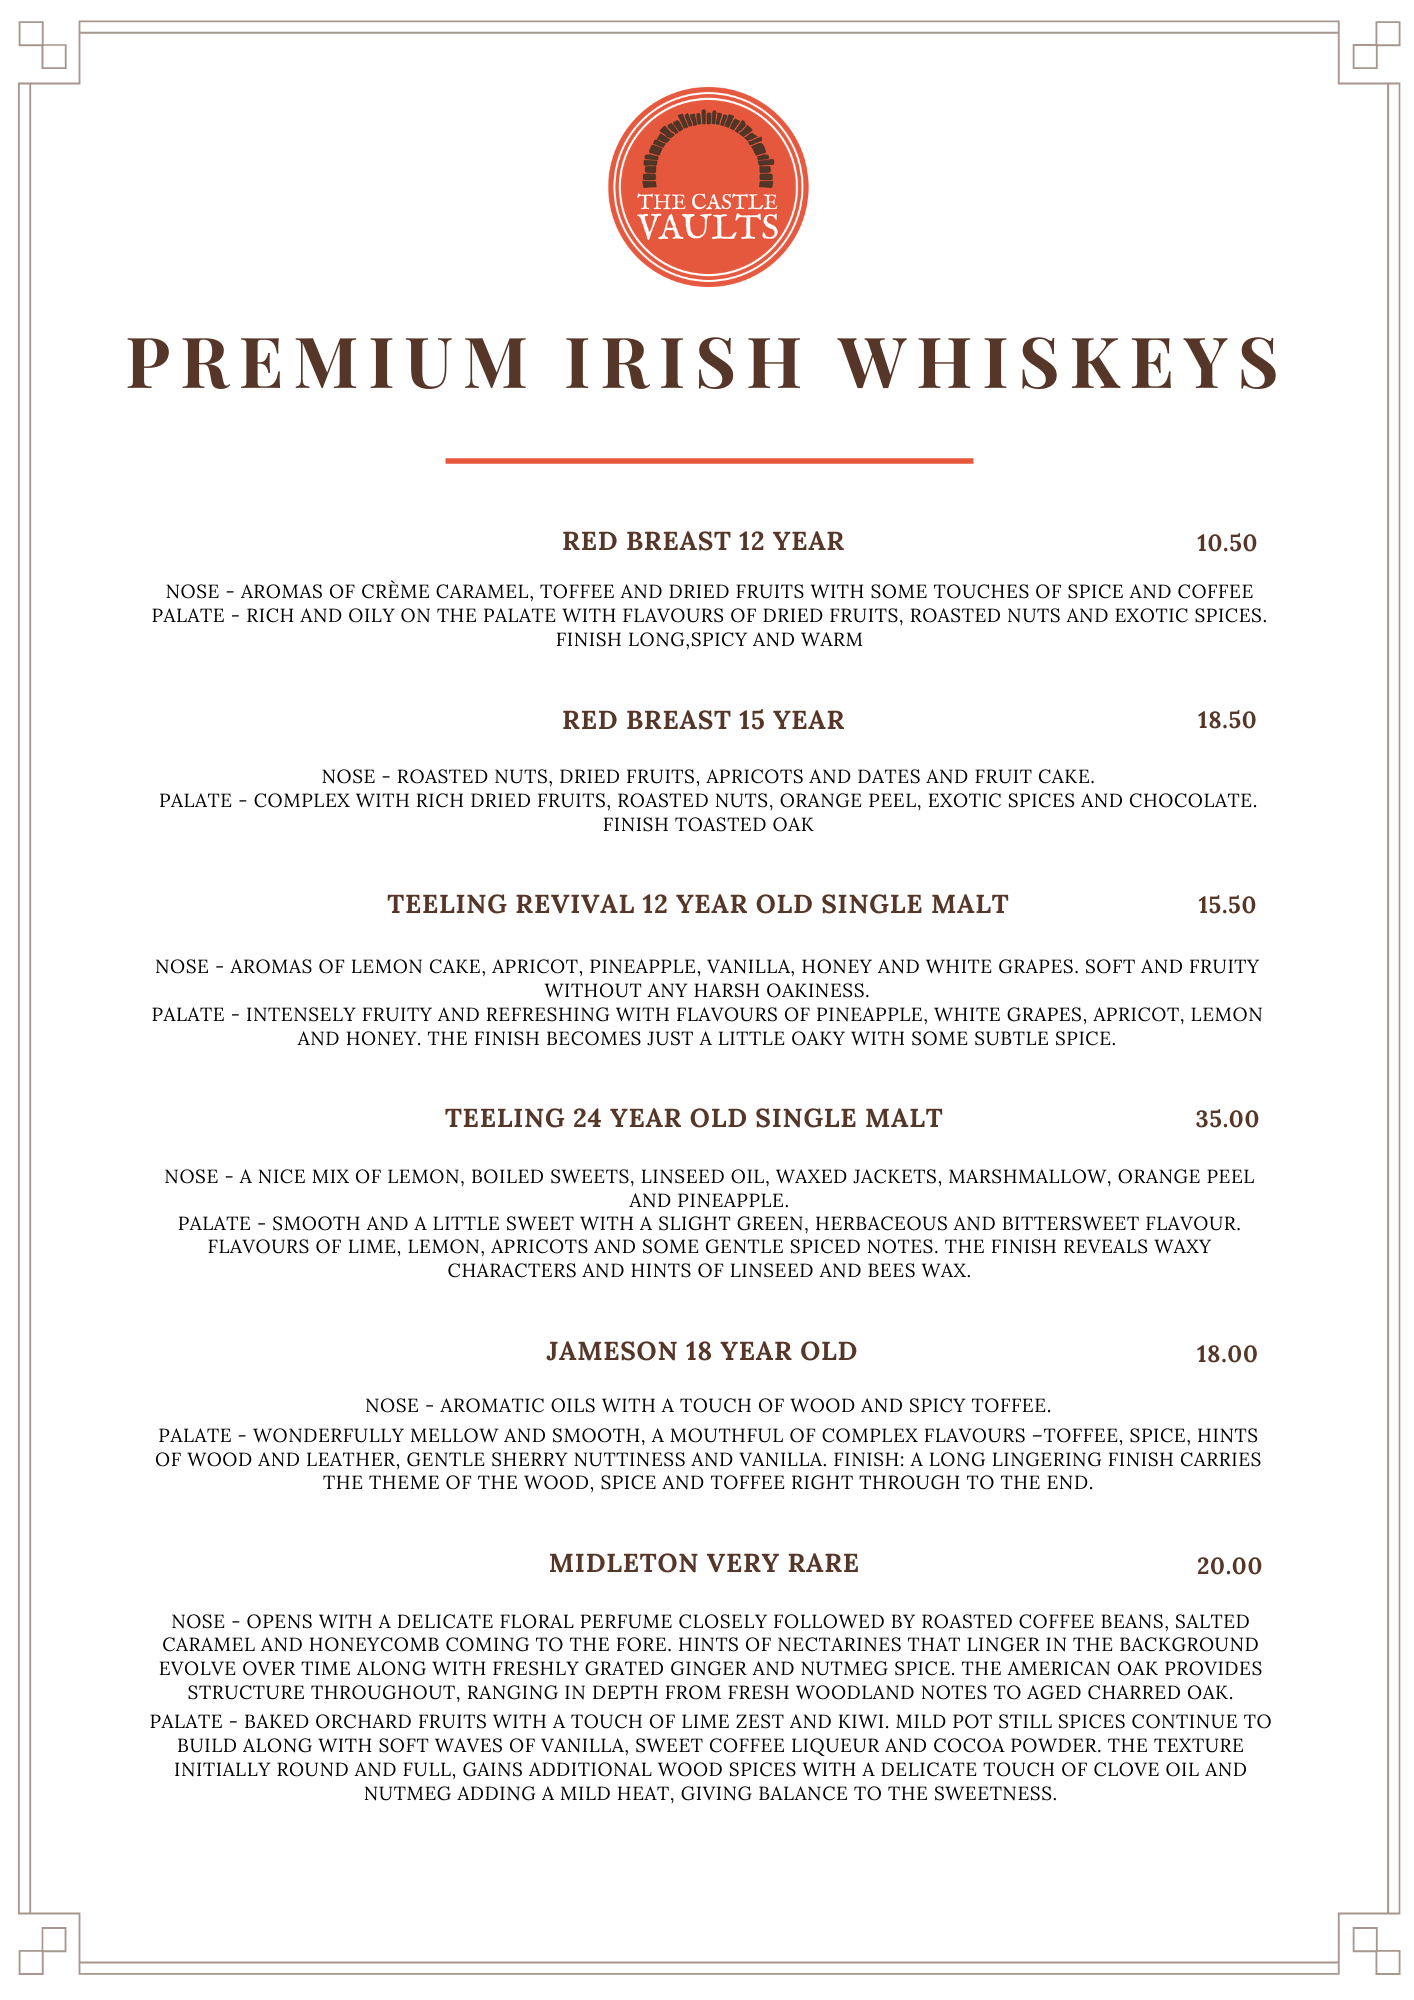 Premium Irish Whiskeys